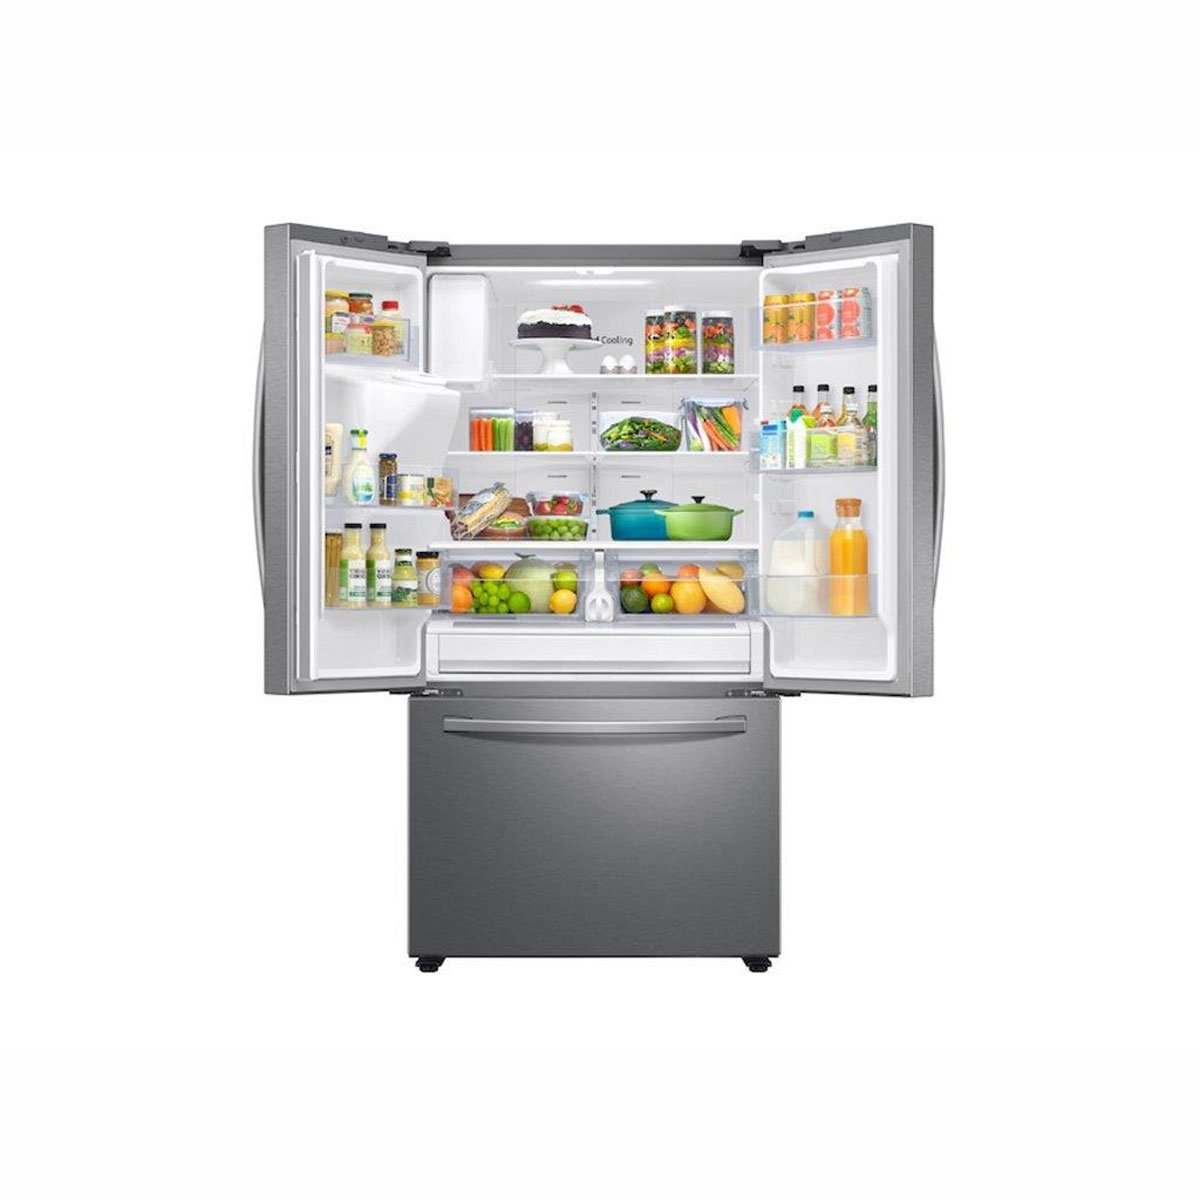 Refrigerador Samsung Fdr 27Ft Rf27T5201Sr/em Acero